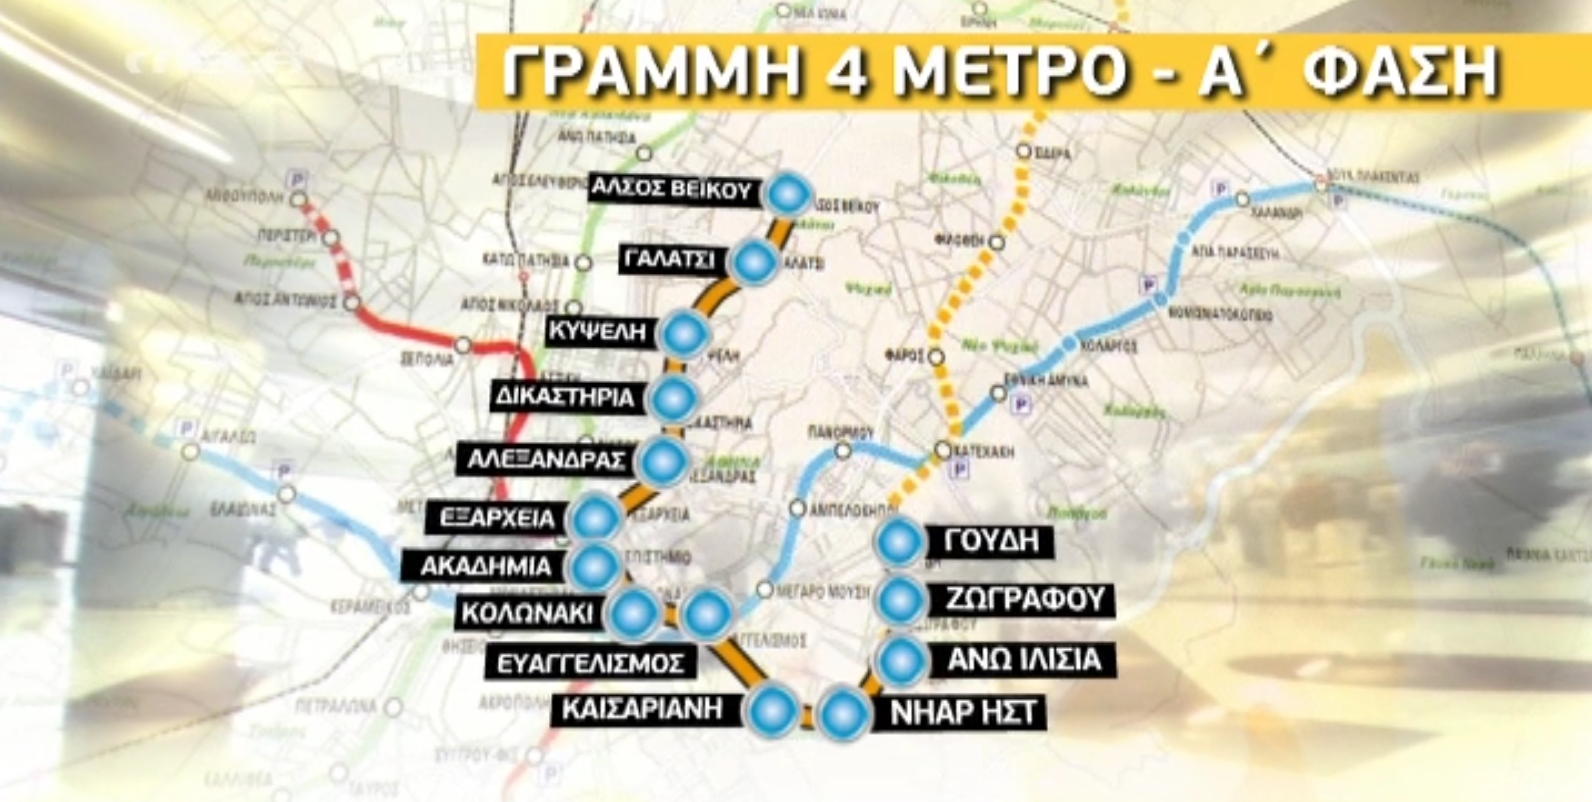 Ο νέος χάρτης του Μετρό: 14 σταθμοί στη γραμμή 4 και συρμοί χωρίς… οδηγό! Θα συνδέσει το Άλσος Βεΐκου με του Γουδή – Τέλος του 2015 ξεκινούν τα έργα